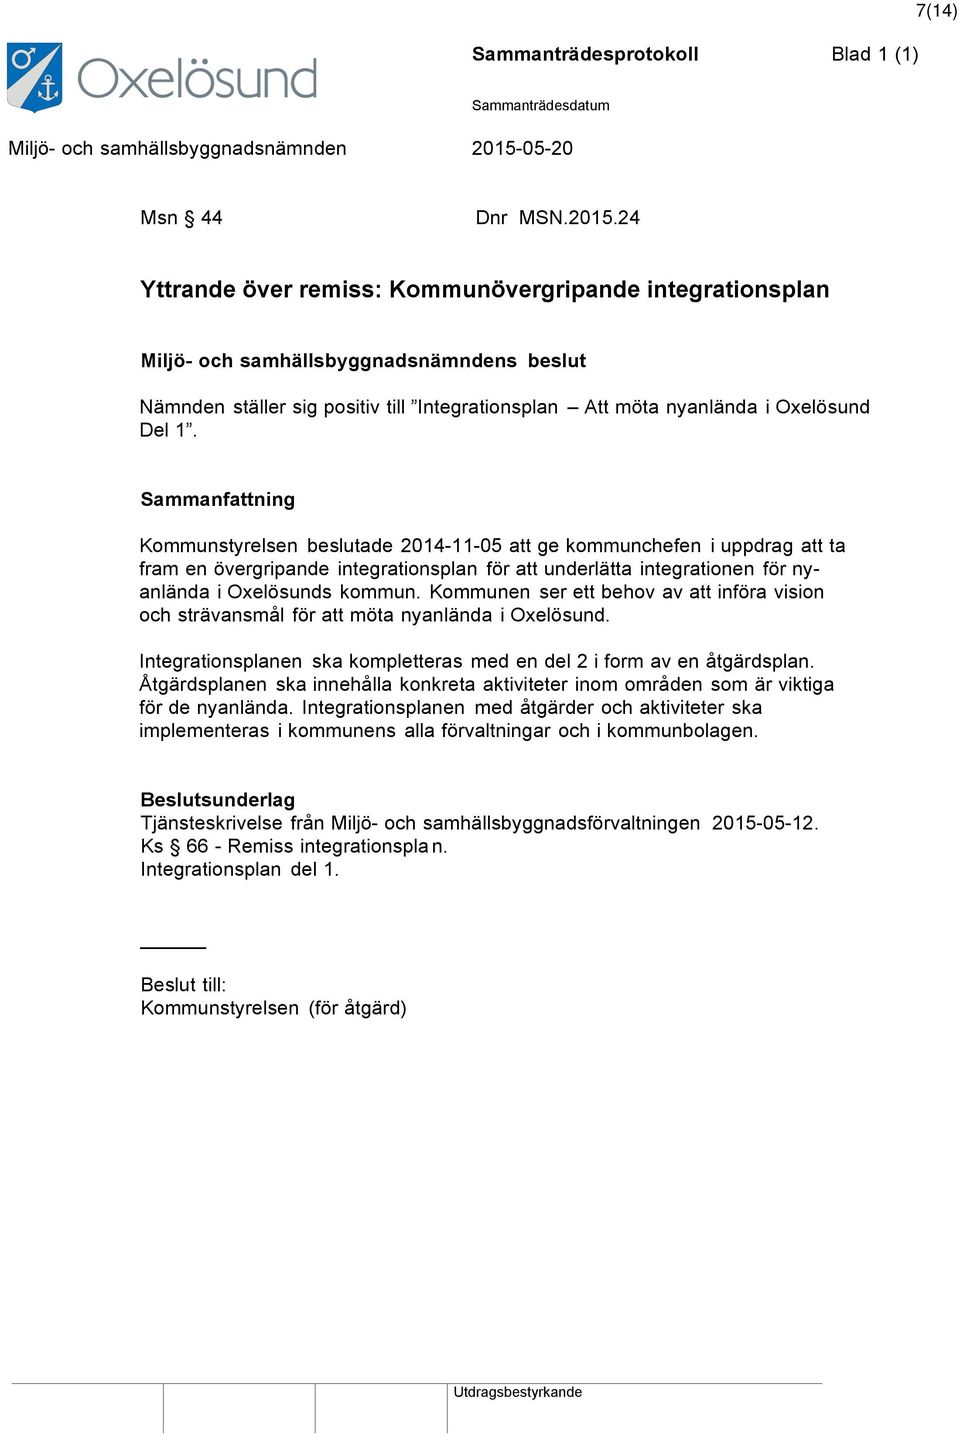 Kommunstyrelsen beslutade 2014-11-05 att ge kommunchefen i uppdrag att ta fram en övergripande integrationsplan för att underlätta integrationen för nyanlända i Oxelösunds kommun.